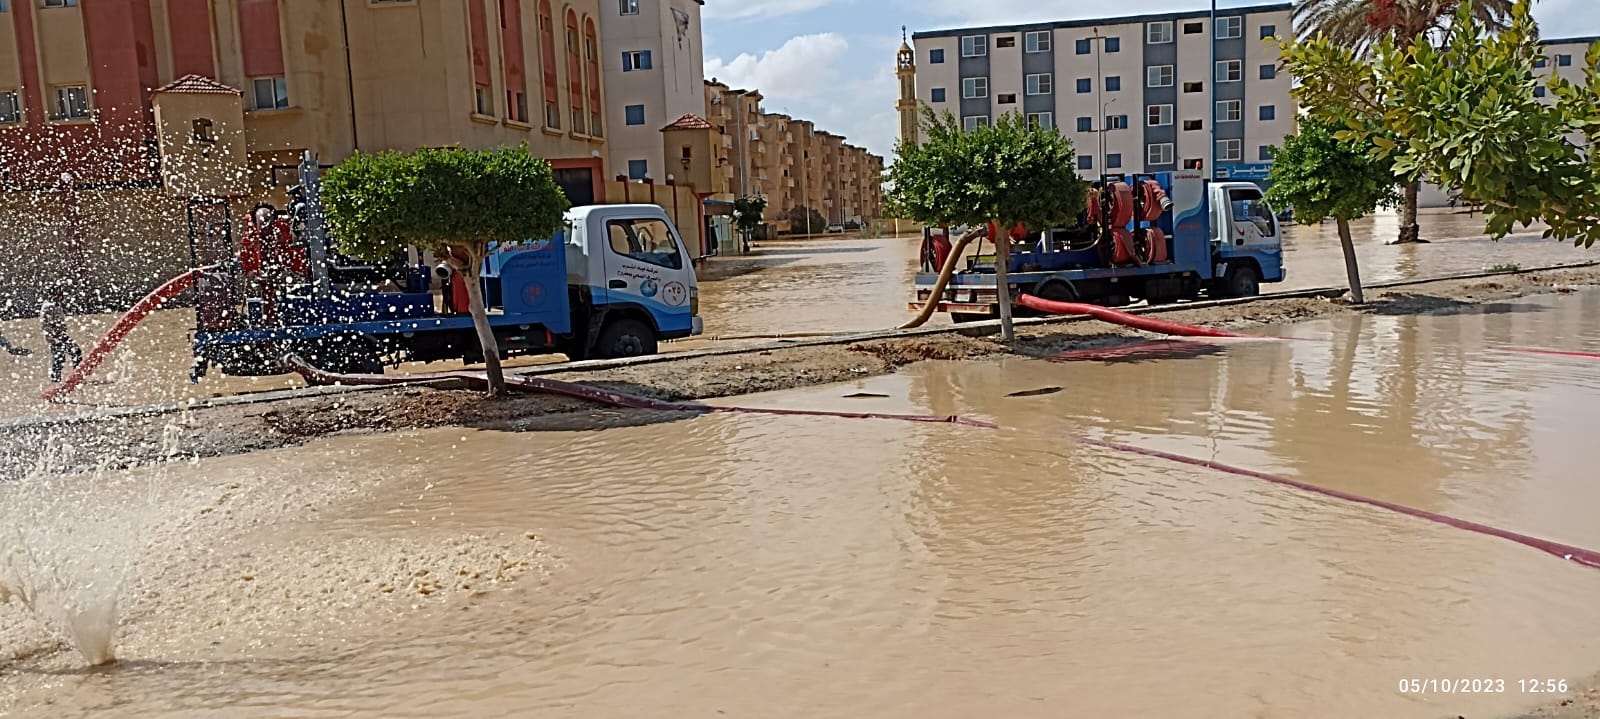 سيارات شركة مياه مطروح تشارك في ازالة اثار السيول